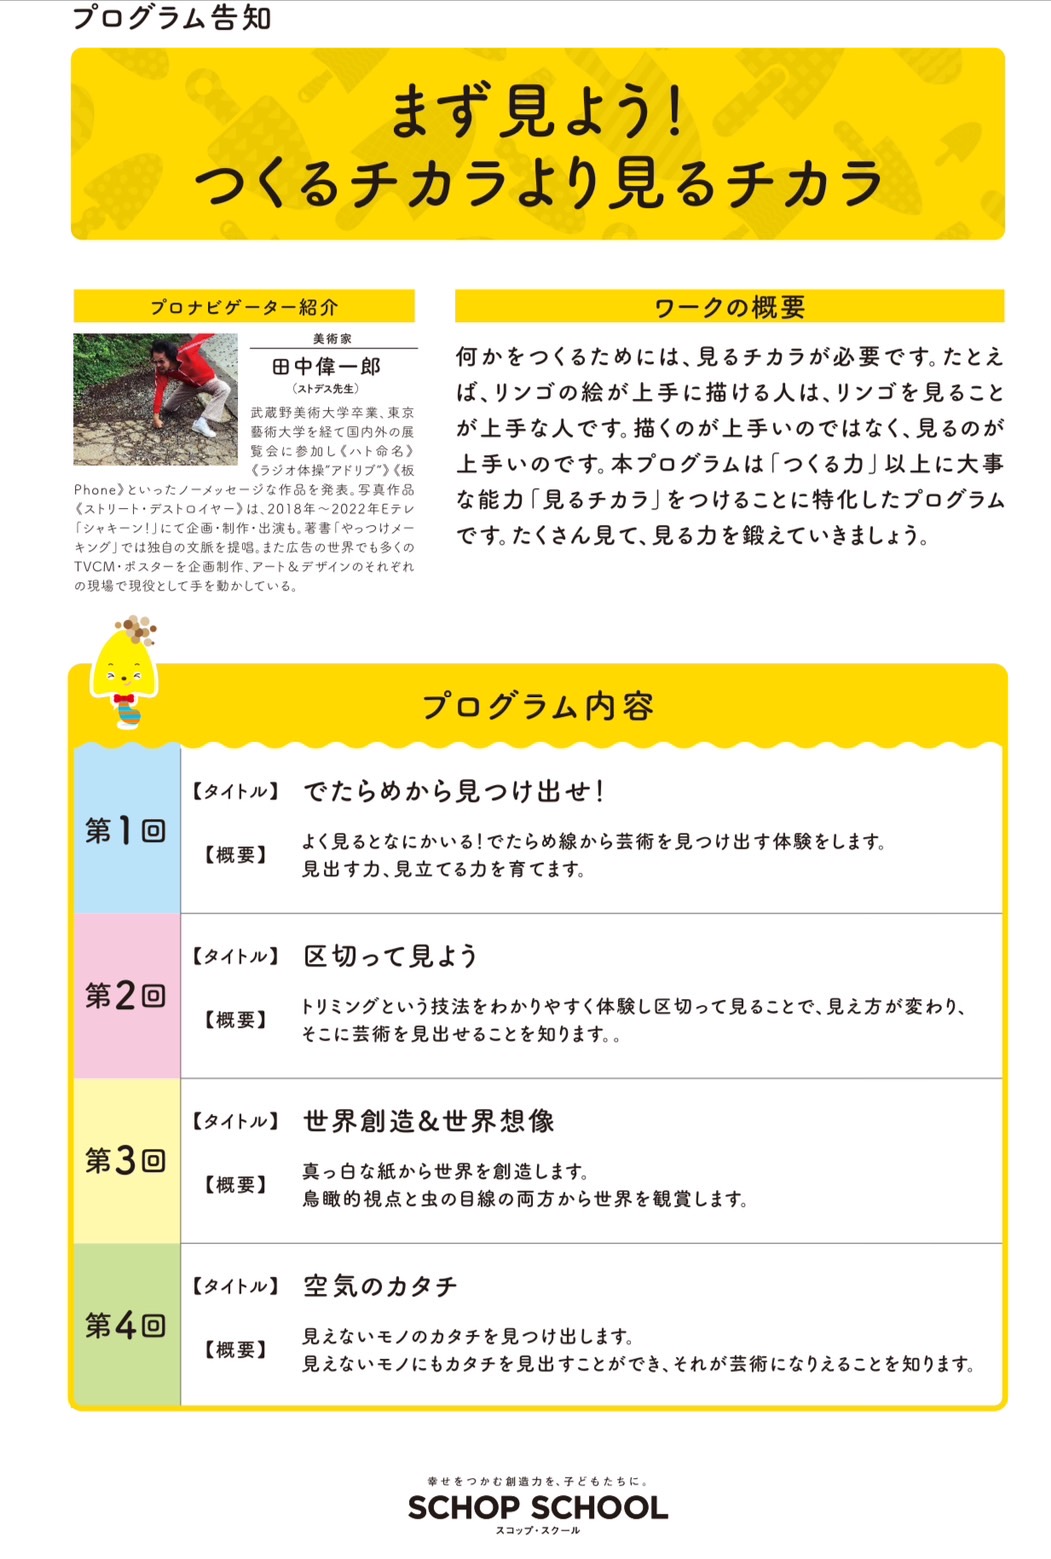 朝日新聞デジタルの取材記事が公開されました。page-visual 朝日新聞デジタルの取材記事が公開されました。ビジュアル